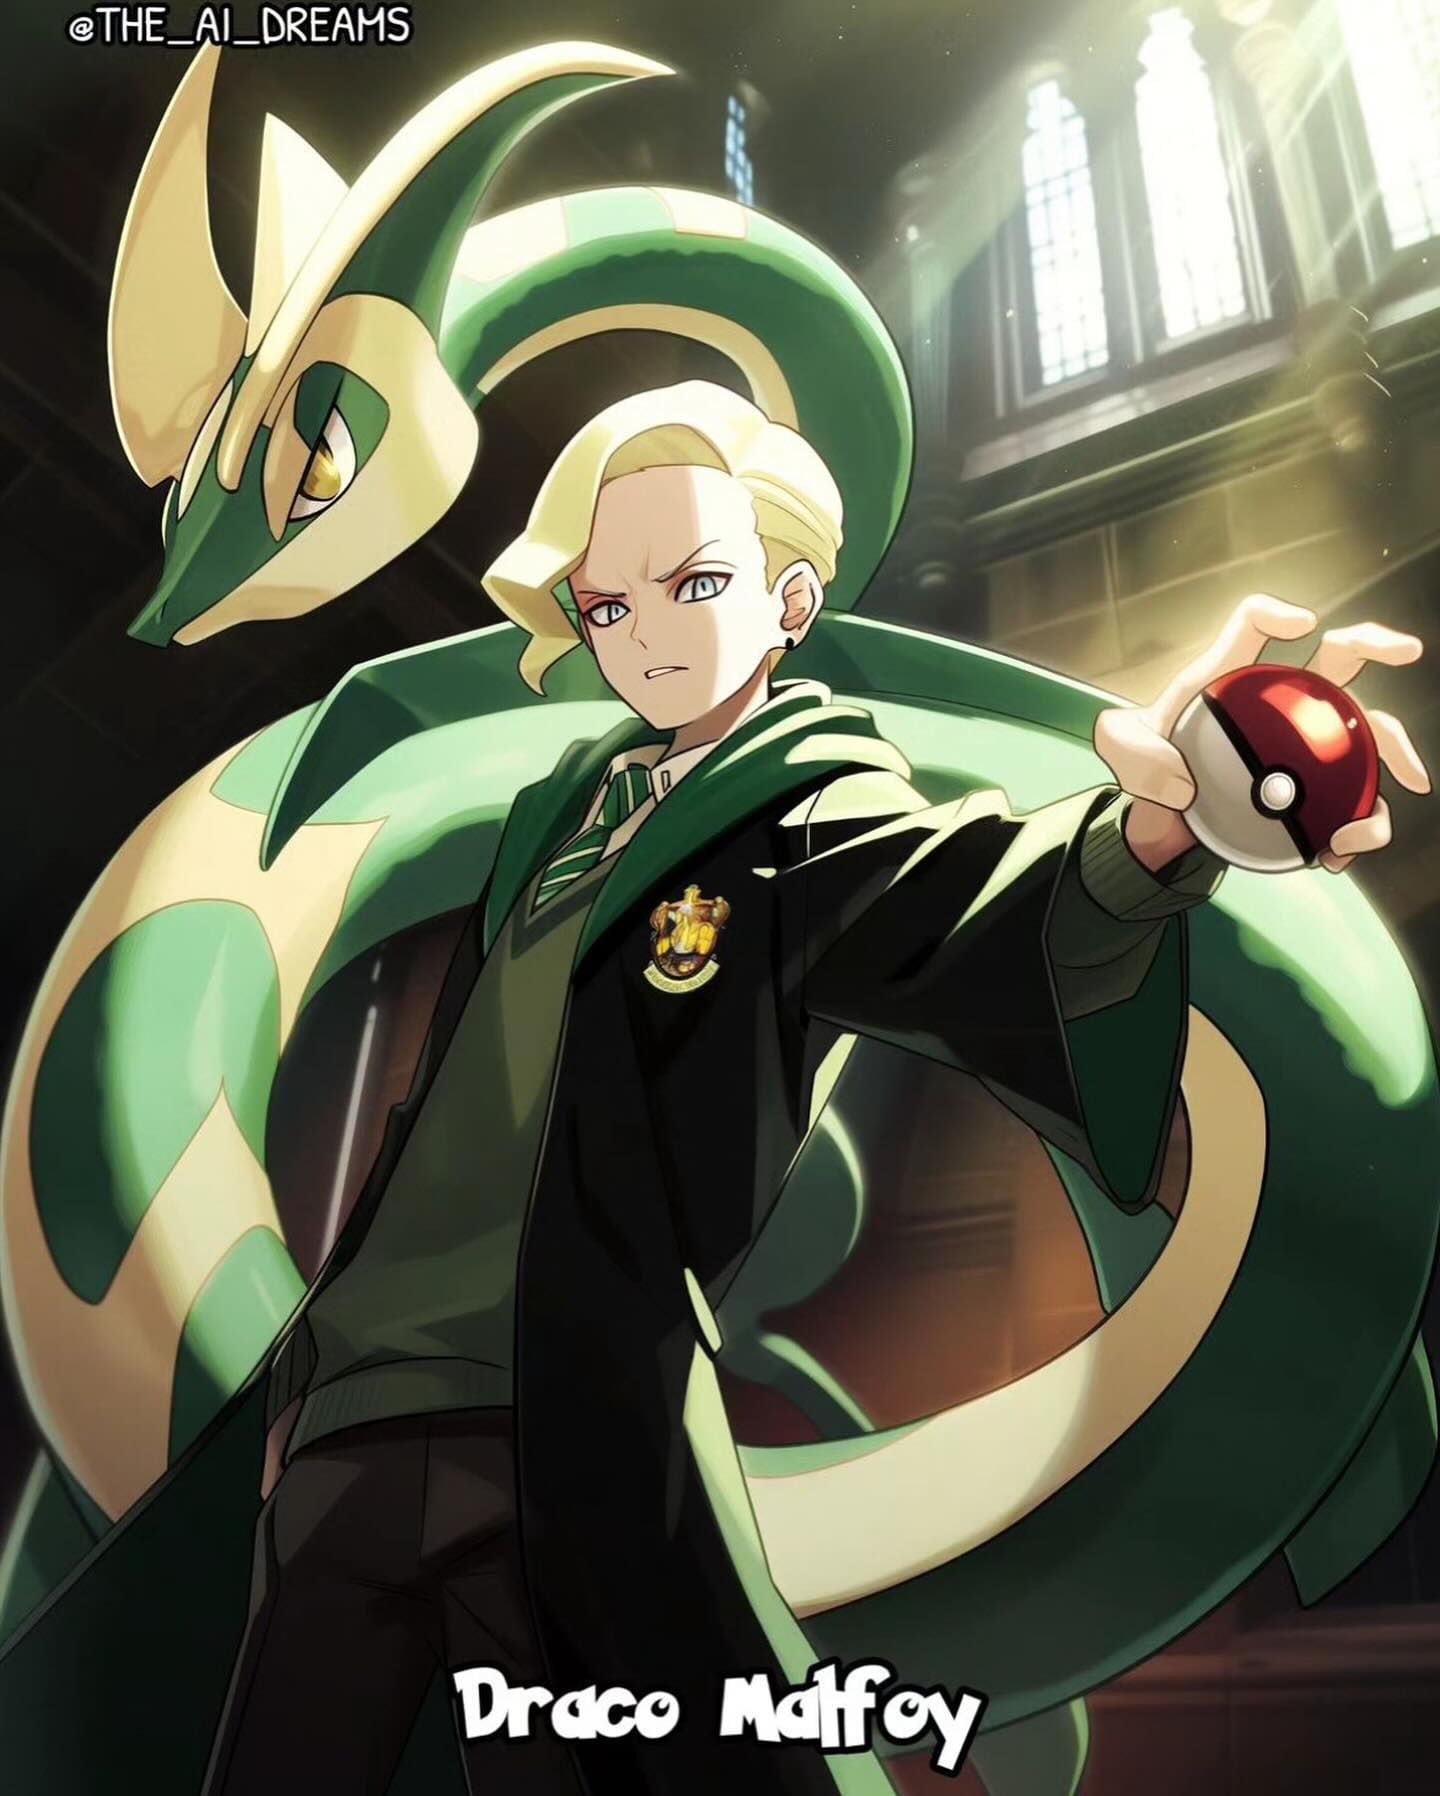 Draco Malfoy de "Harry Potter" en el universo Pokemon segun una IA